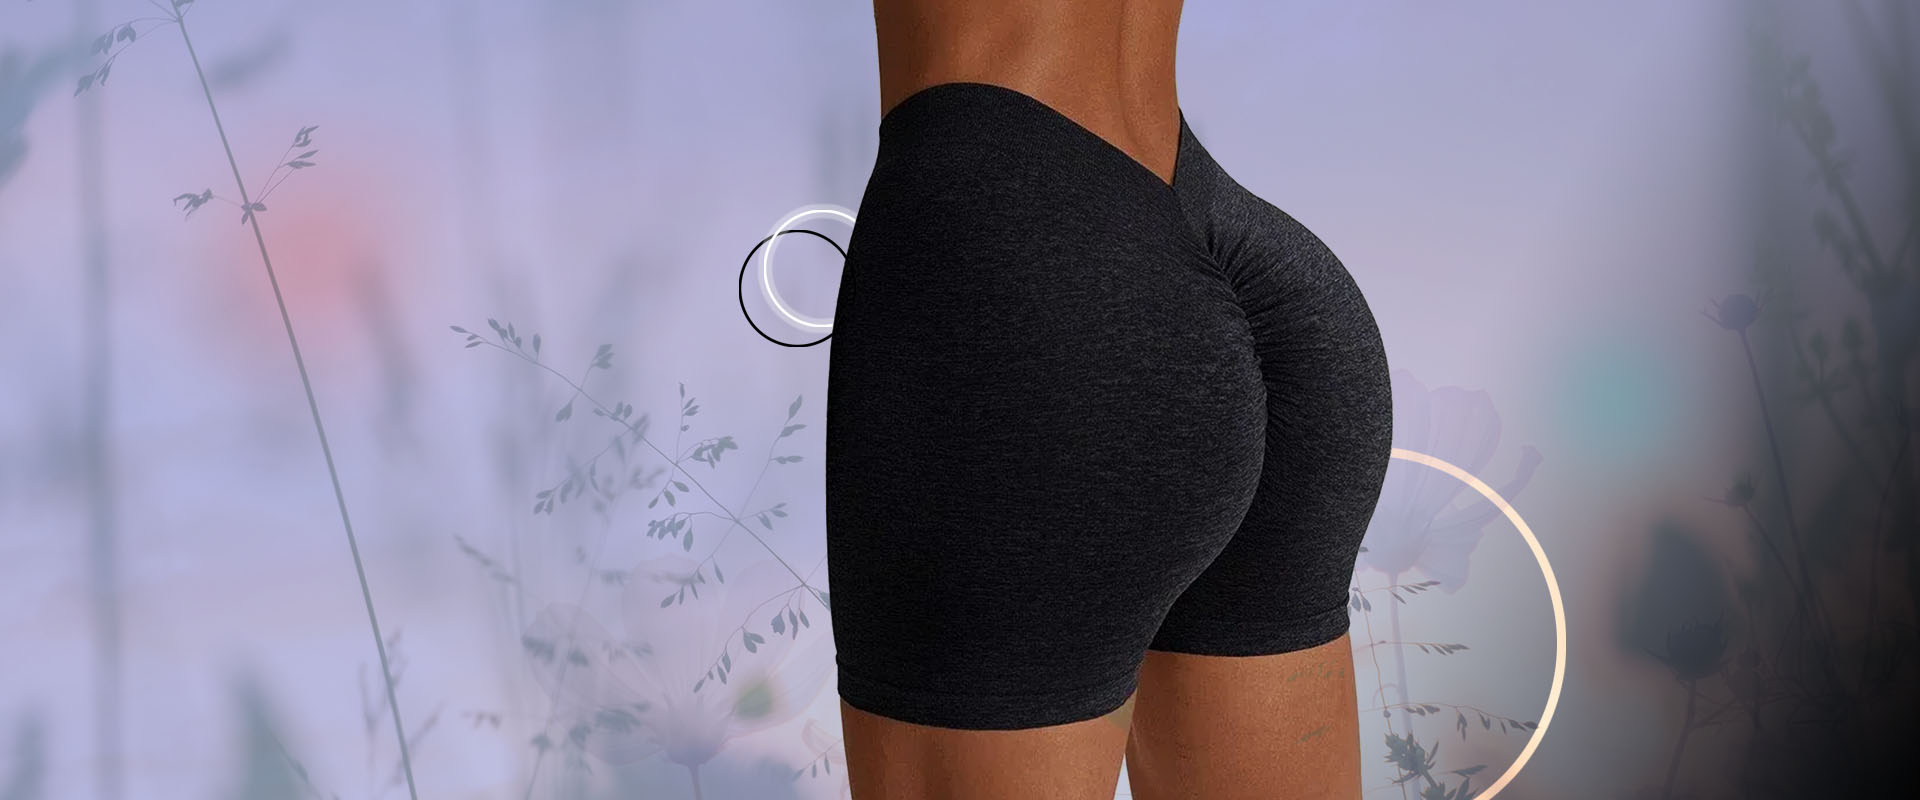 Scrunch Butt Shorts